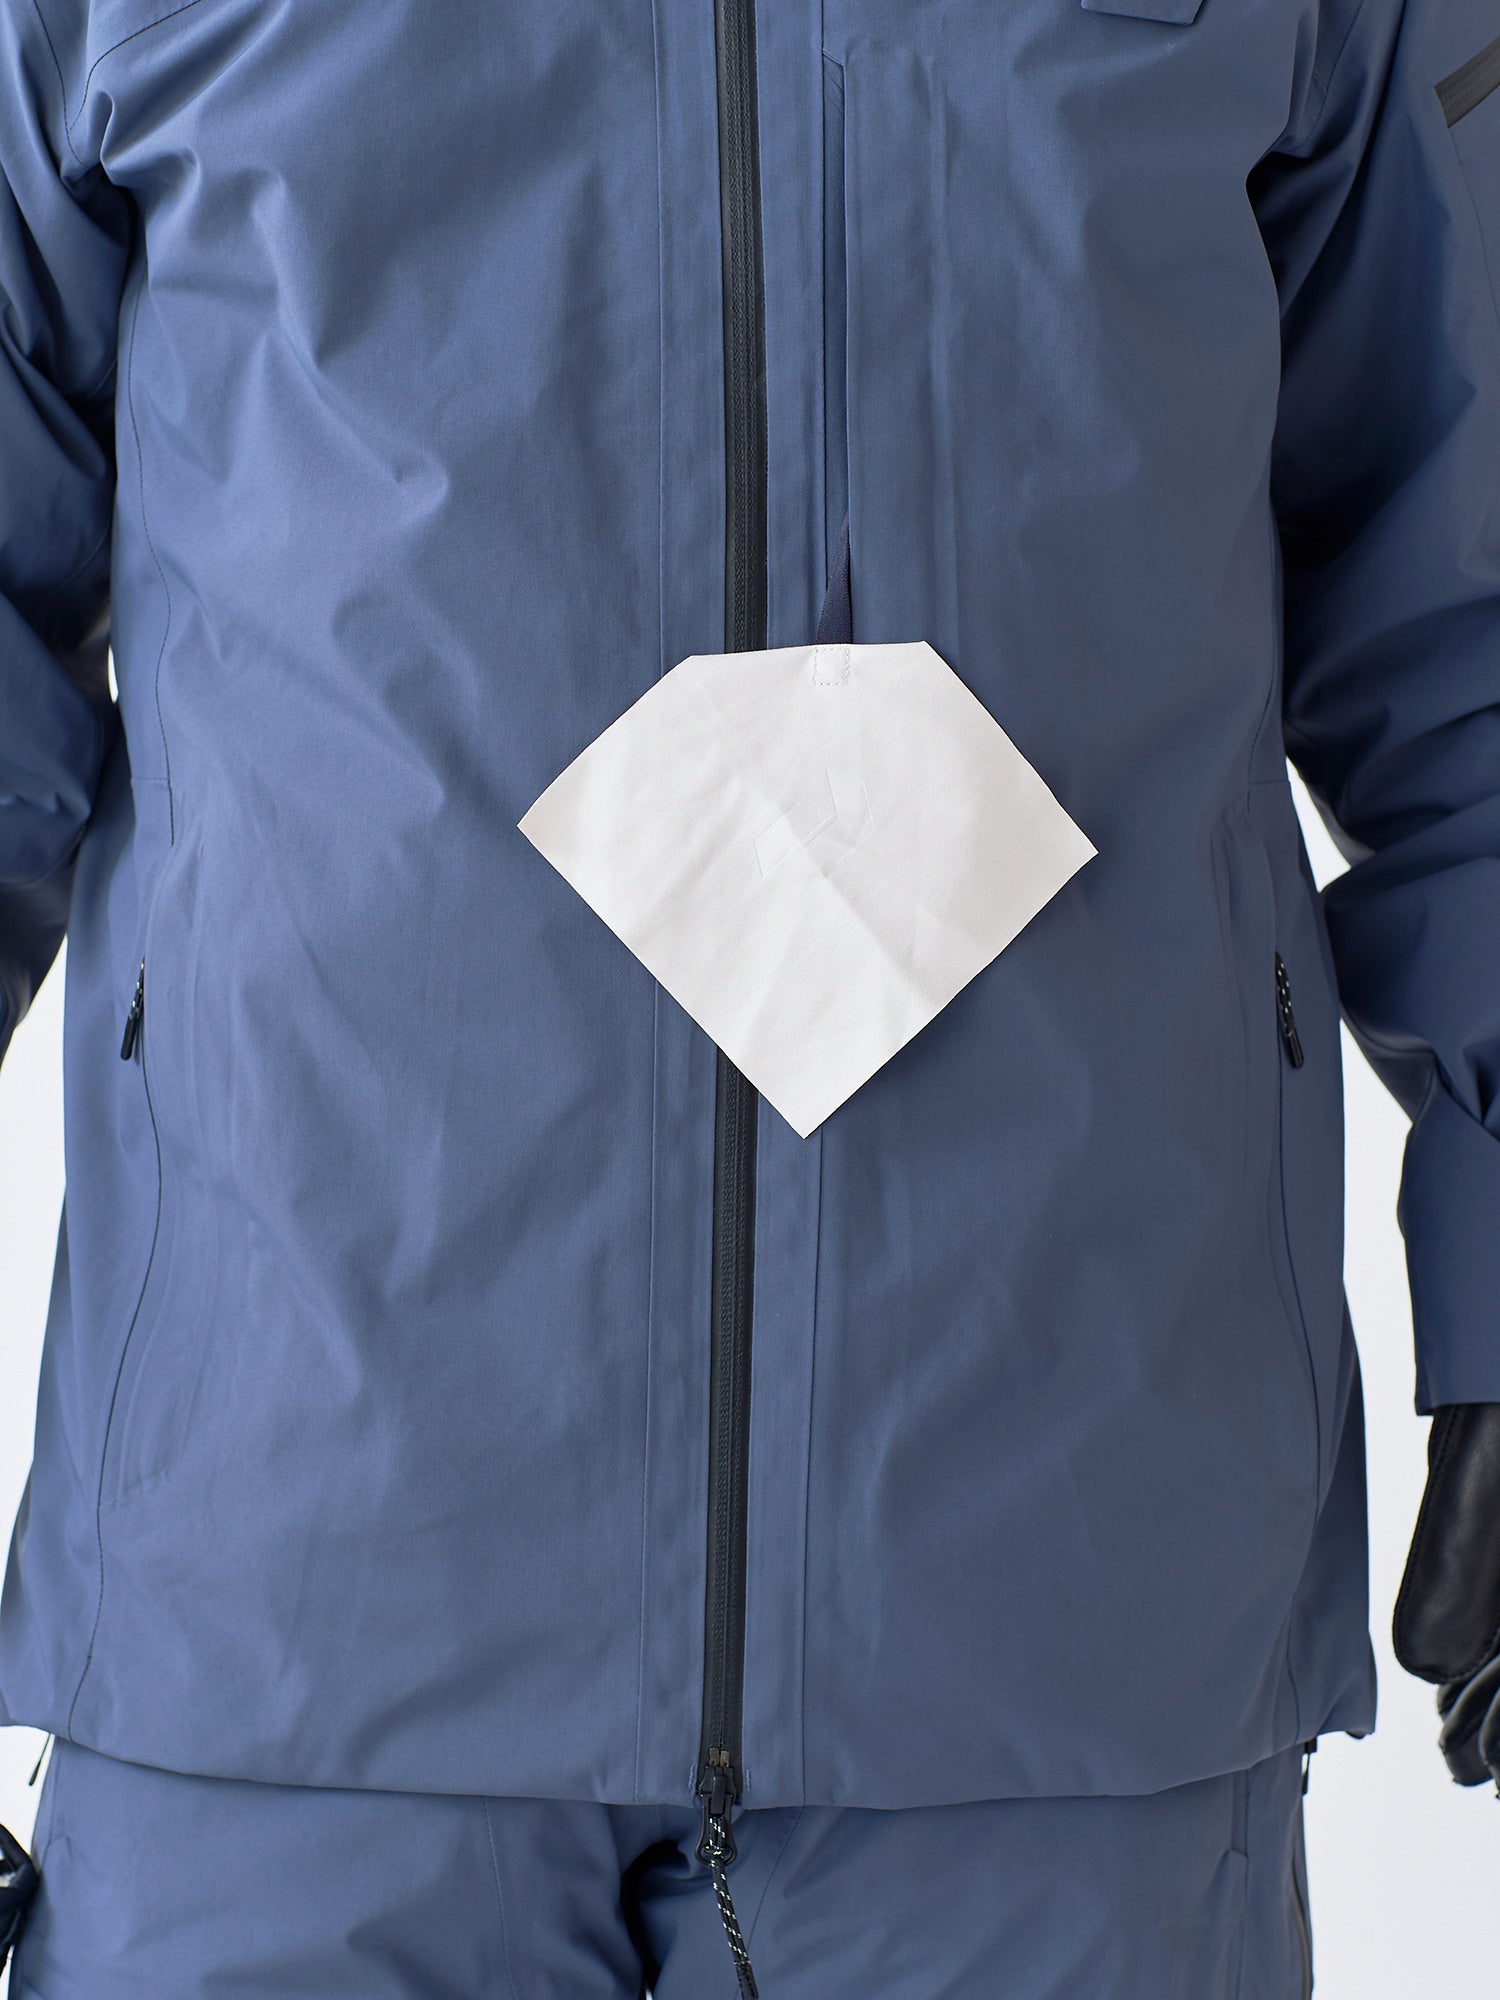 M Alpine Gore-Tex 2L Jacket